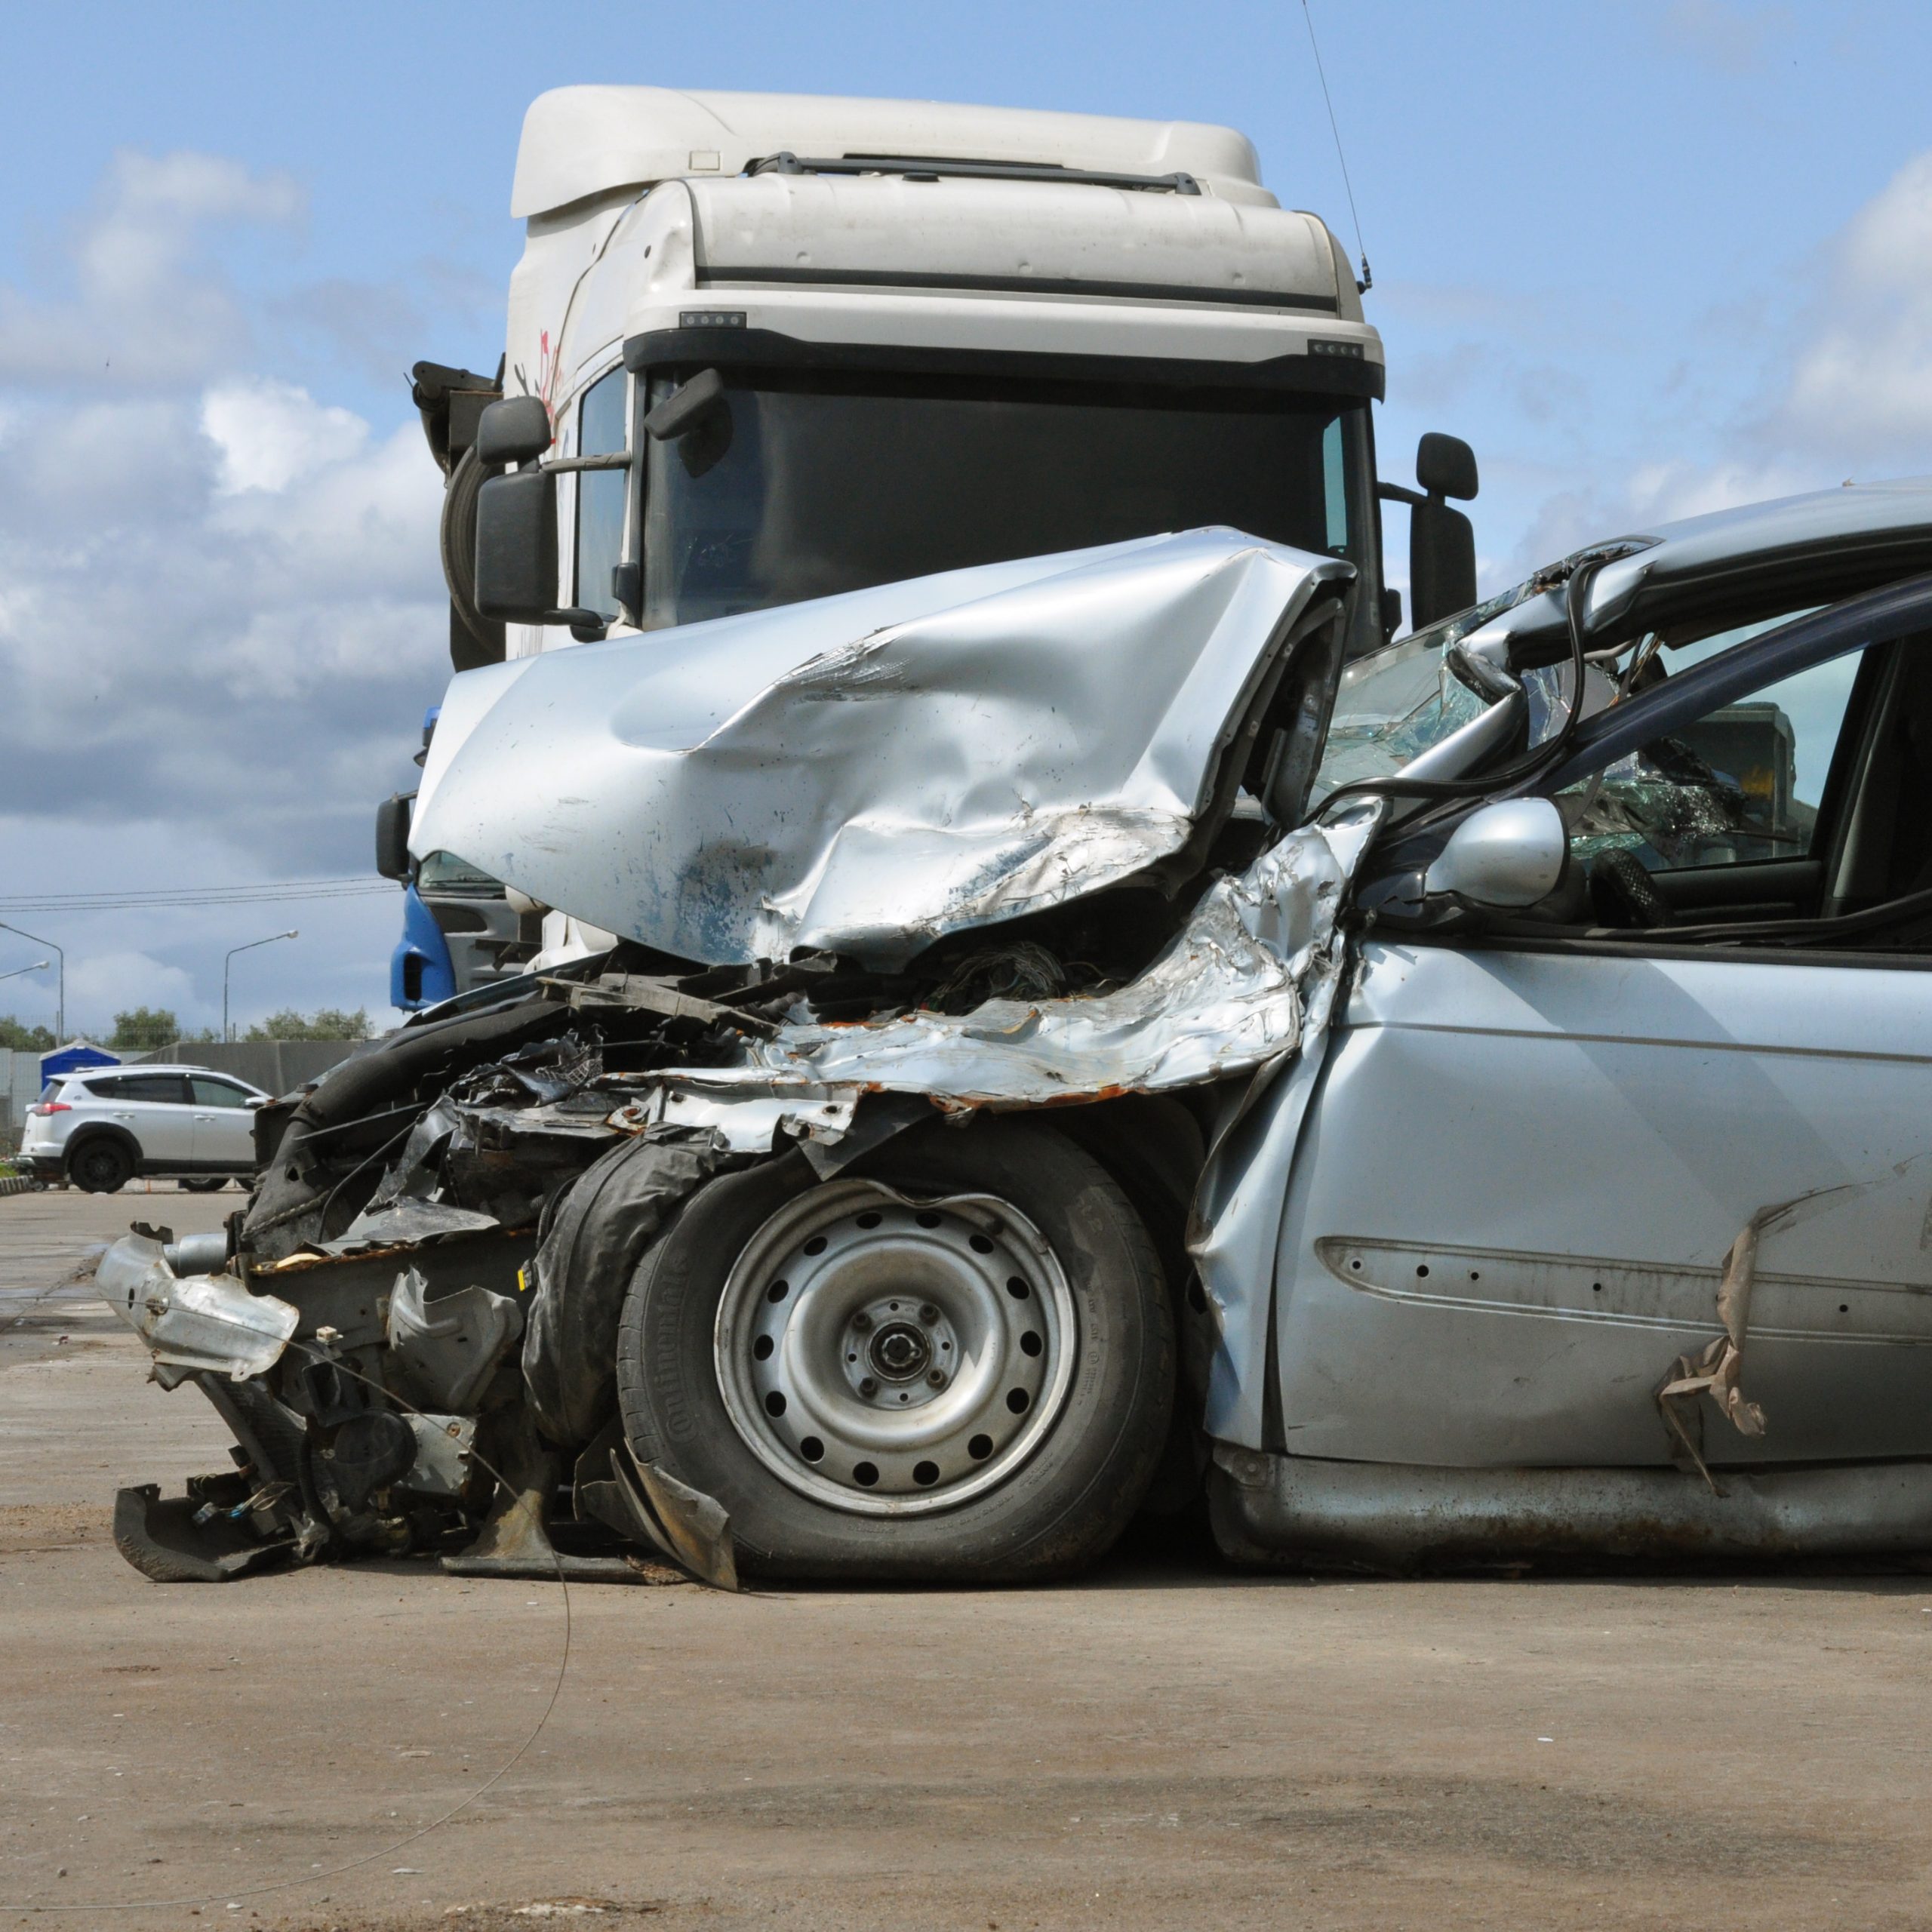 trucks and blindspot accidents, trucks, blindspot, truck accident, car accident